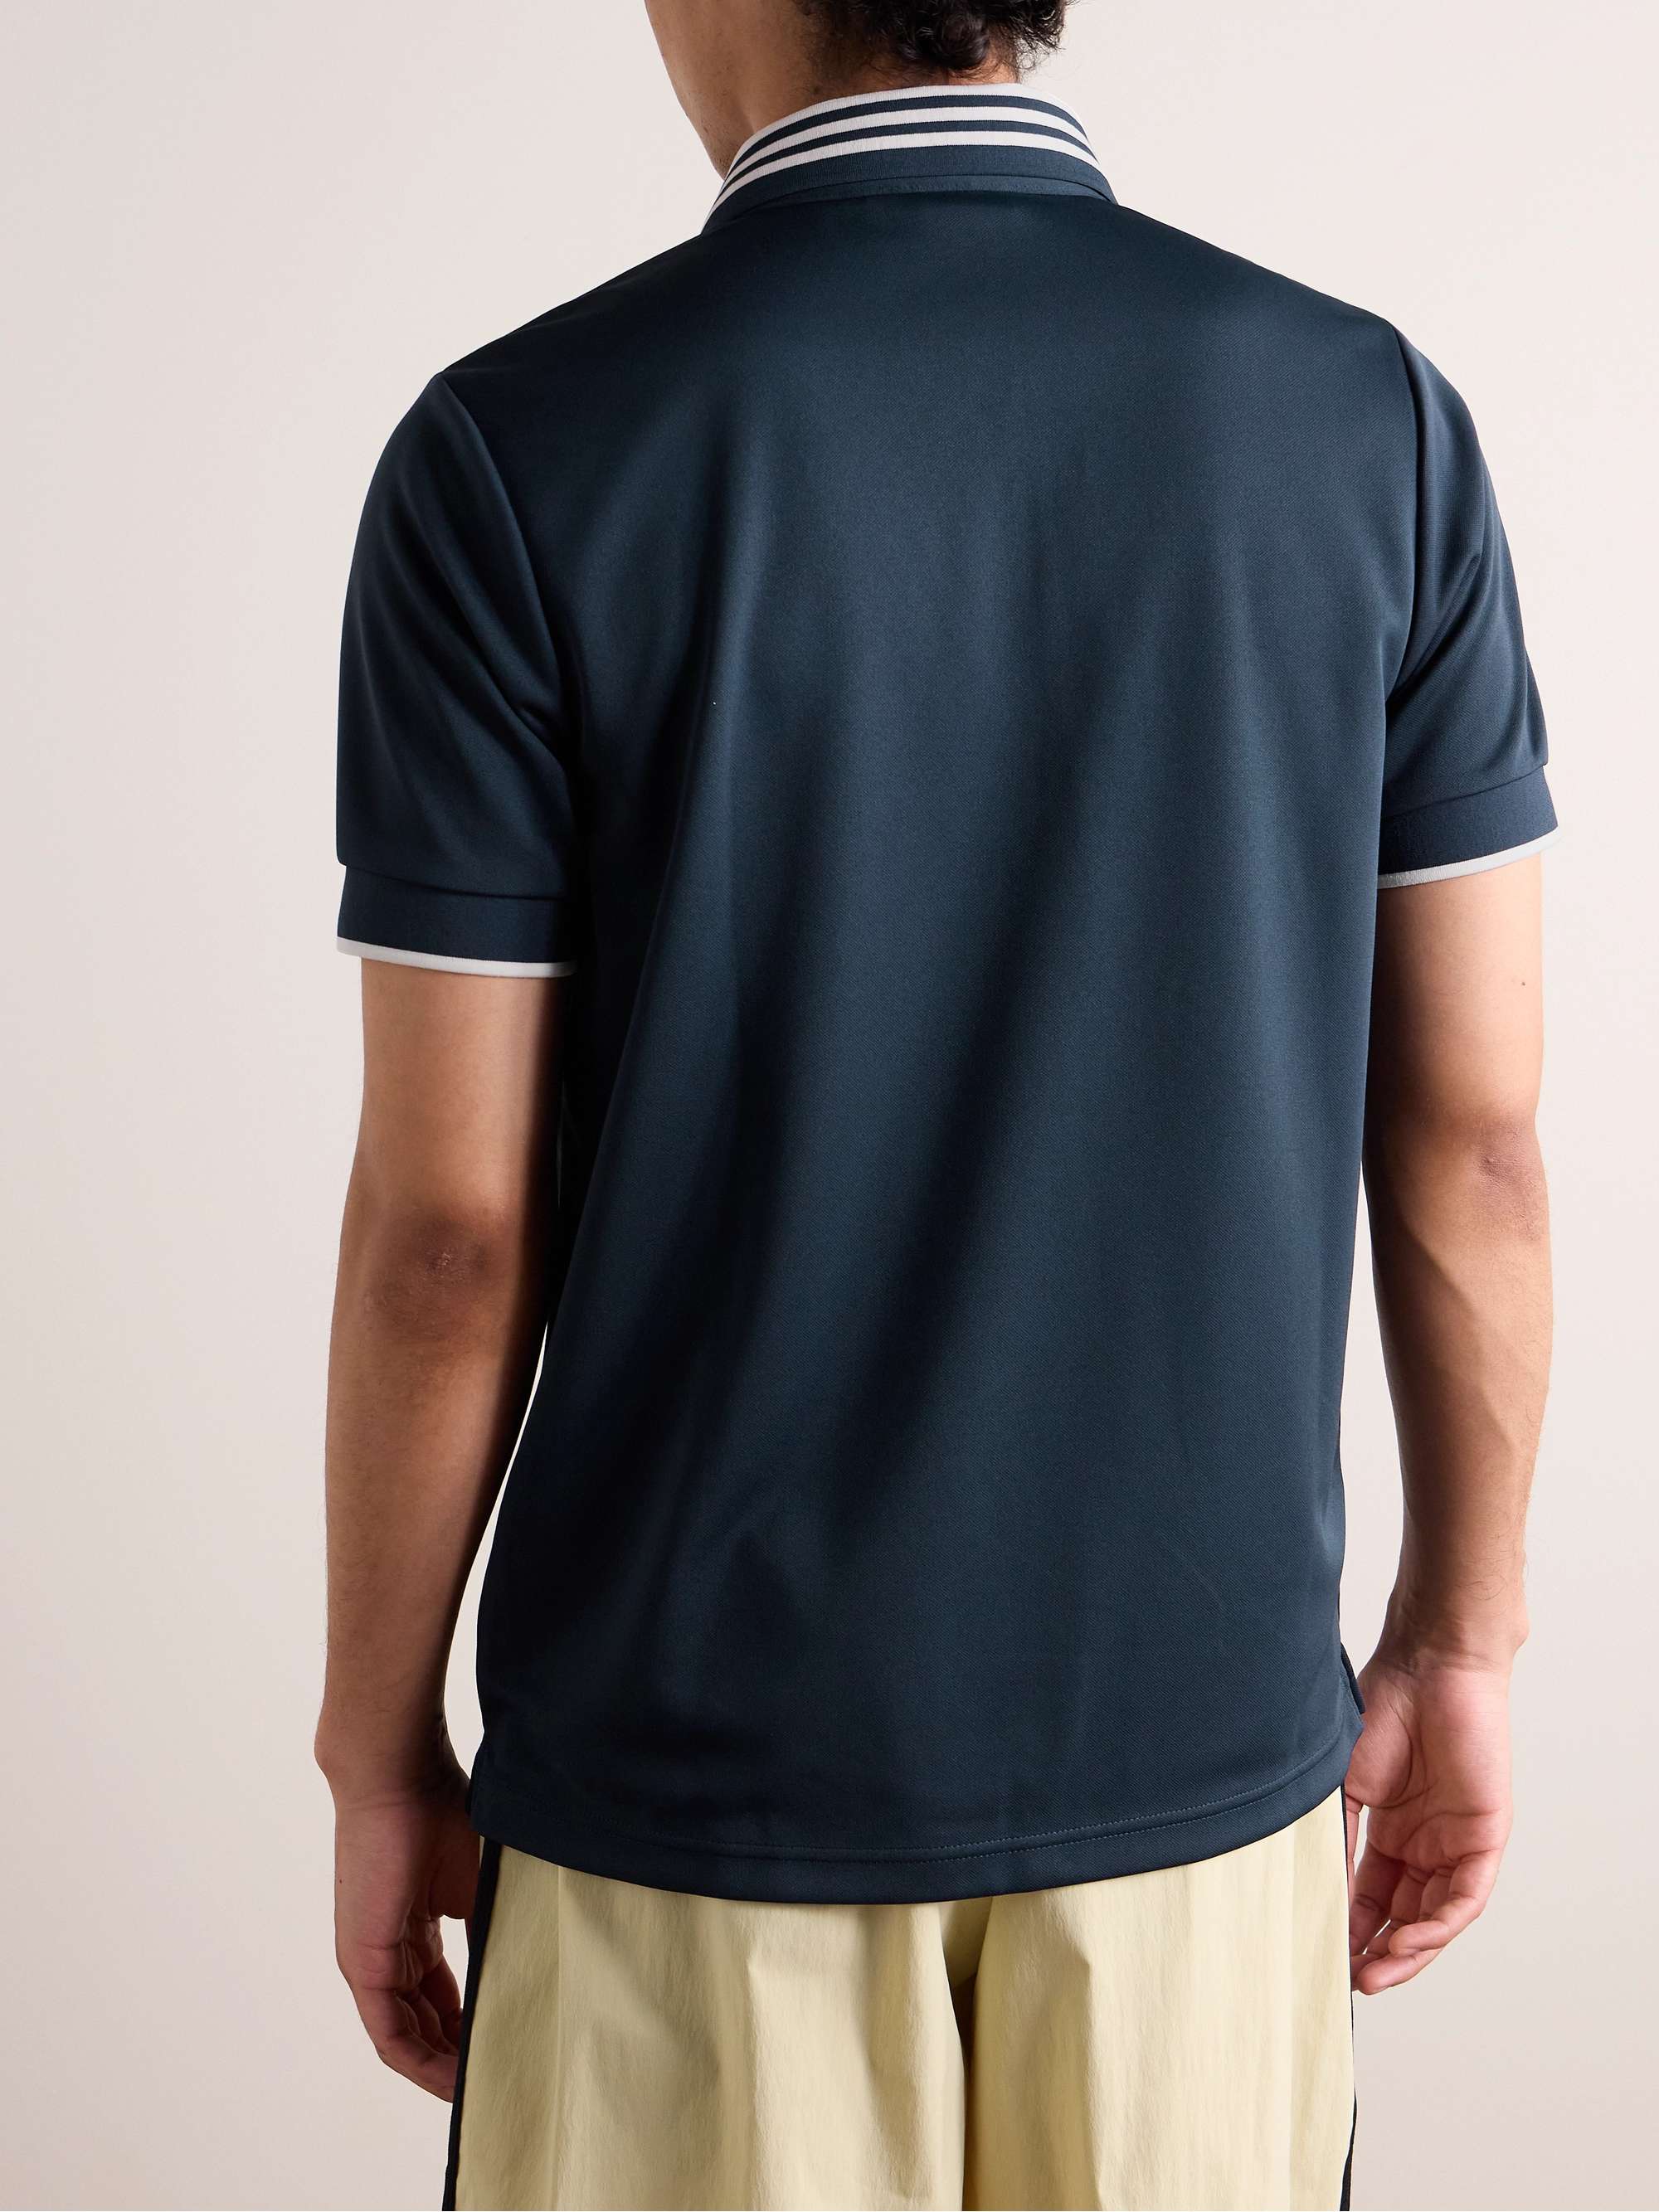 ADIDAS ORIGINALS Striped Logo-Appliquéd Jersey Polo Shirt for Men | MR ...